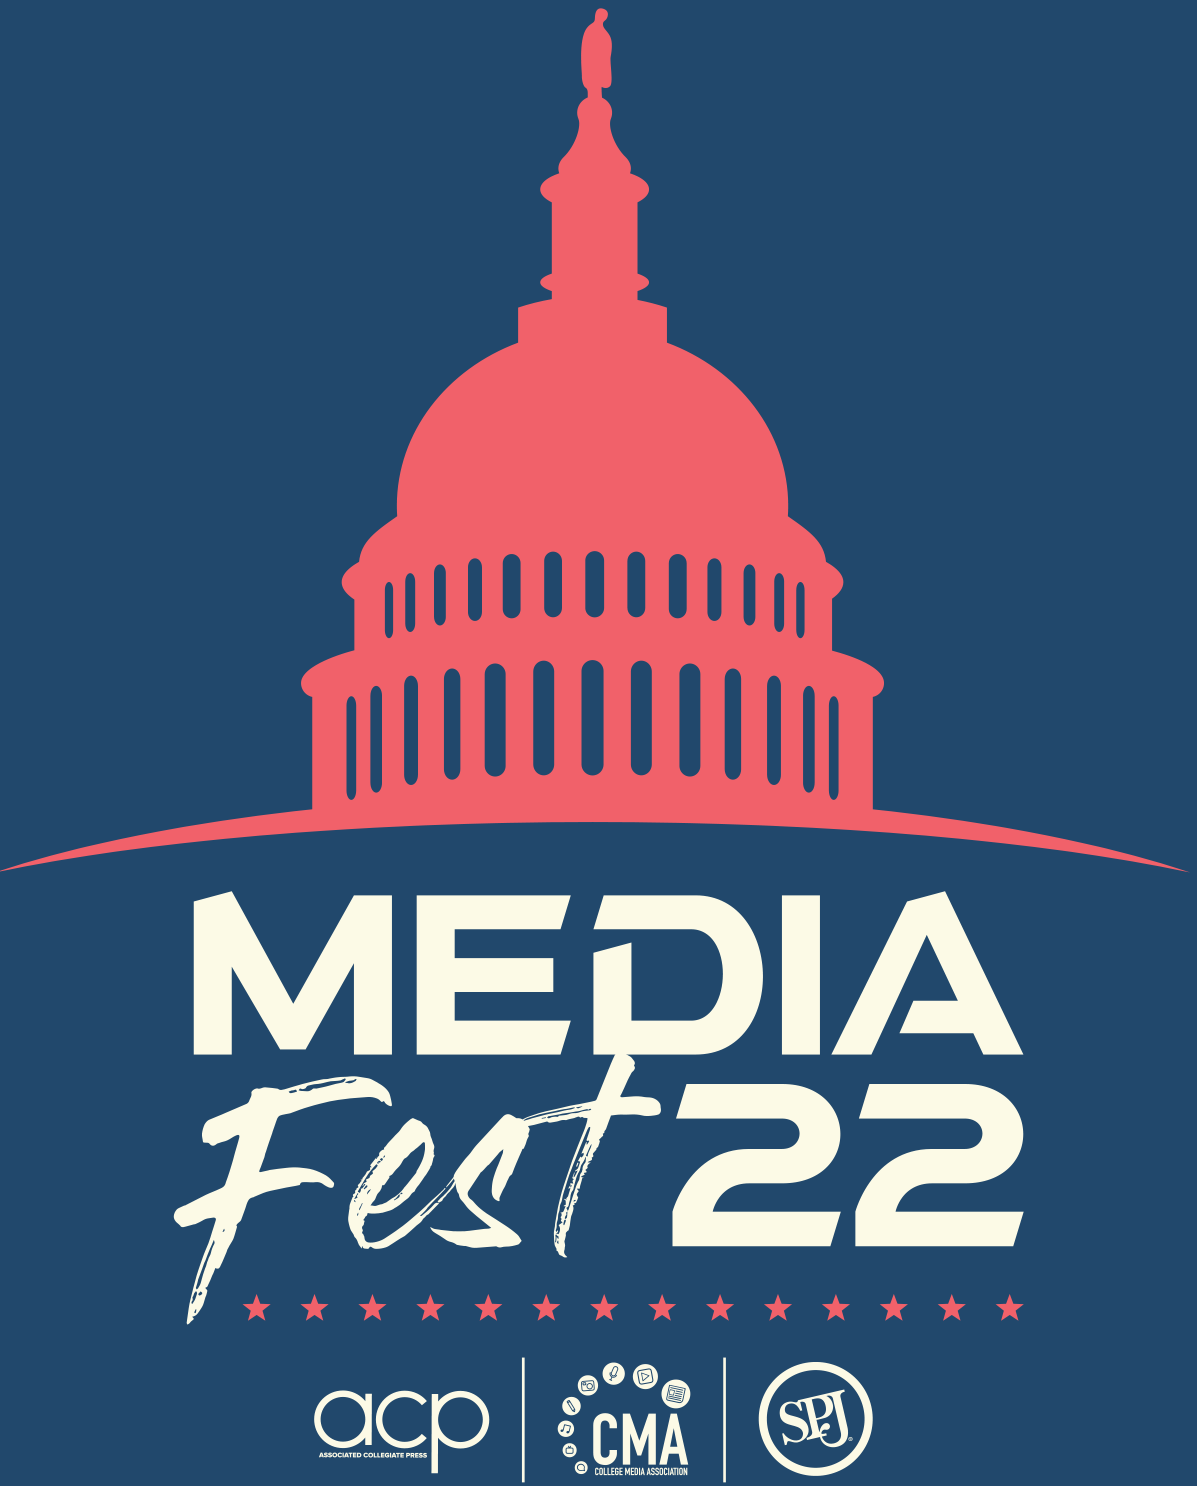 MediaFest22 Logo